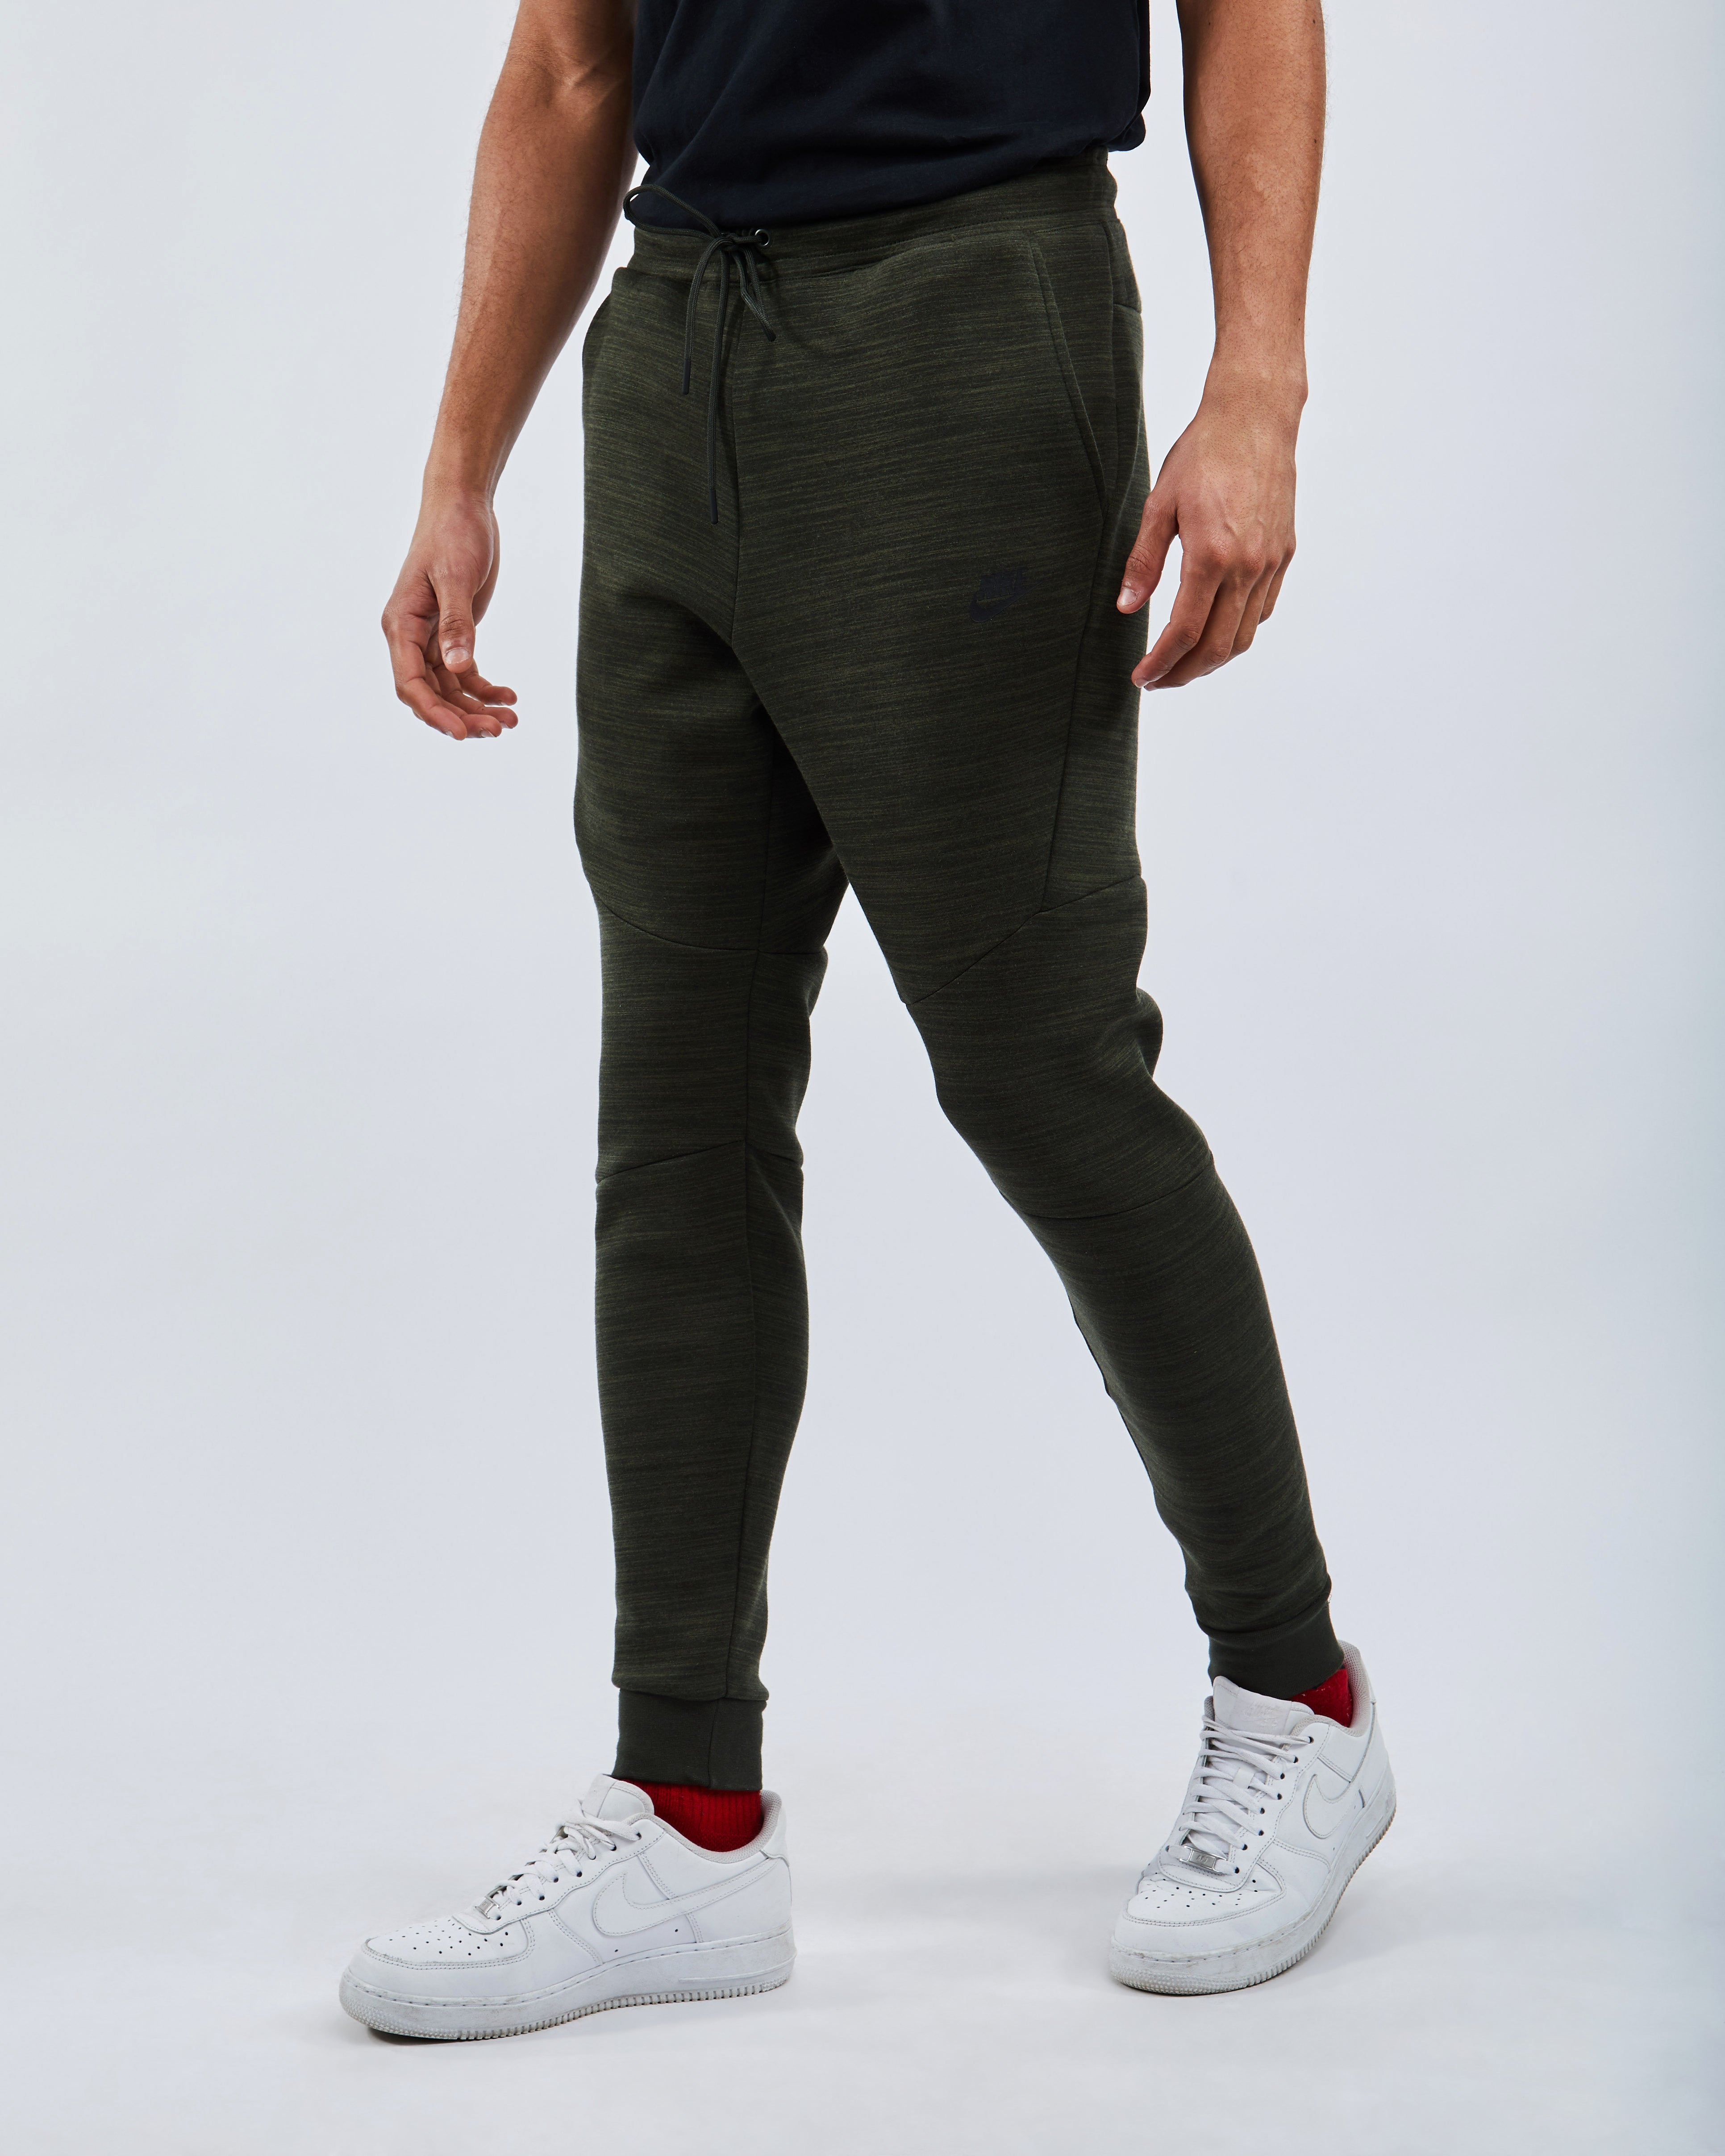 Nike Tech Fleece Elongated - Men Pants 